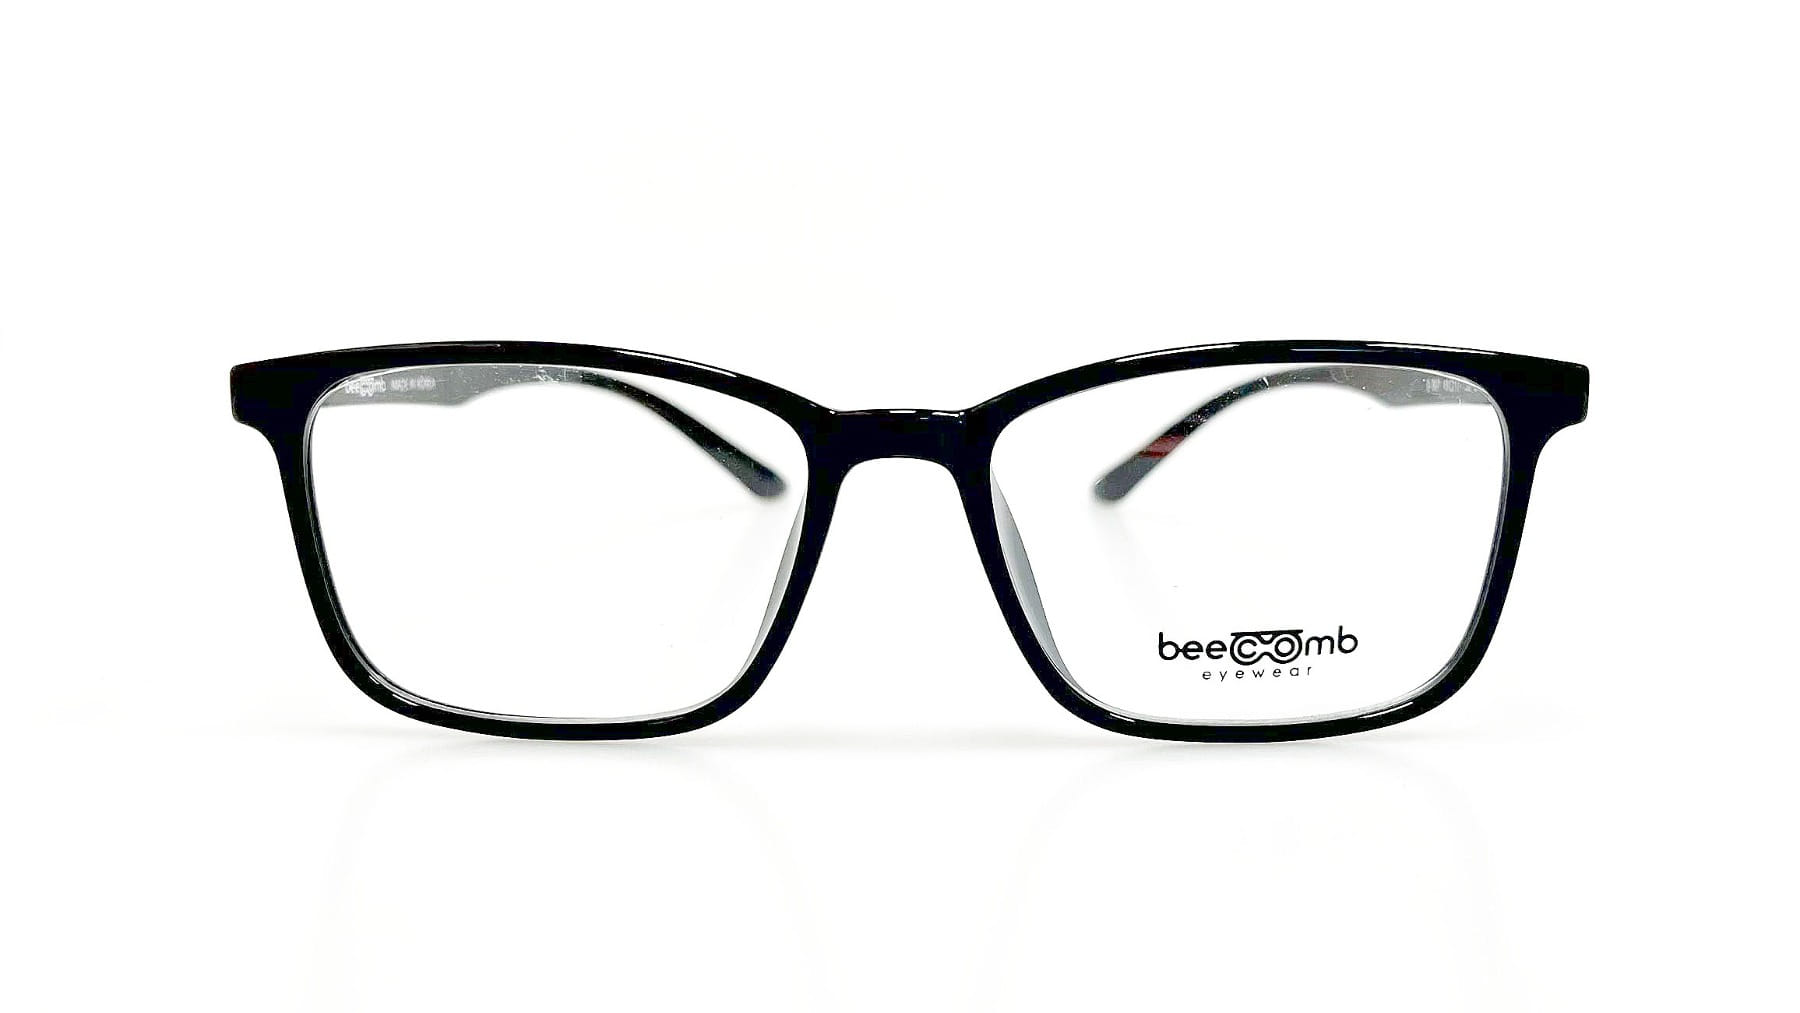 B-907, Korean glasses, sunglasses, eyeglasses, glasses